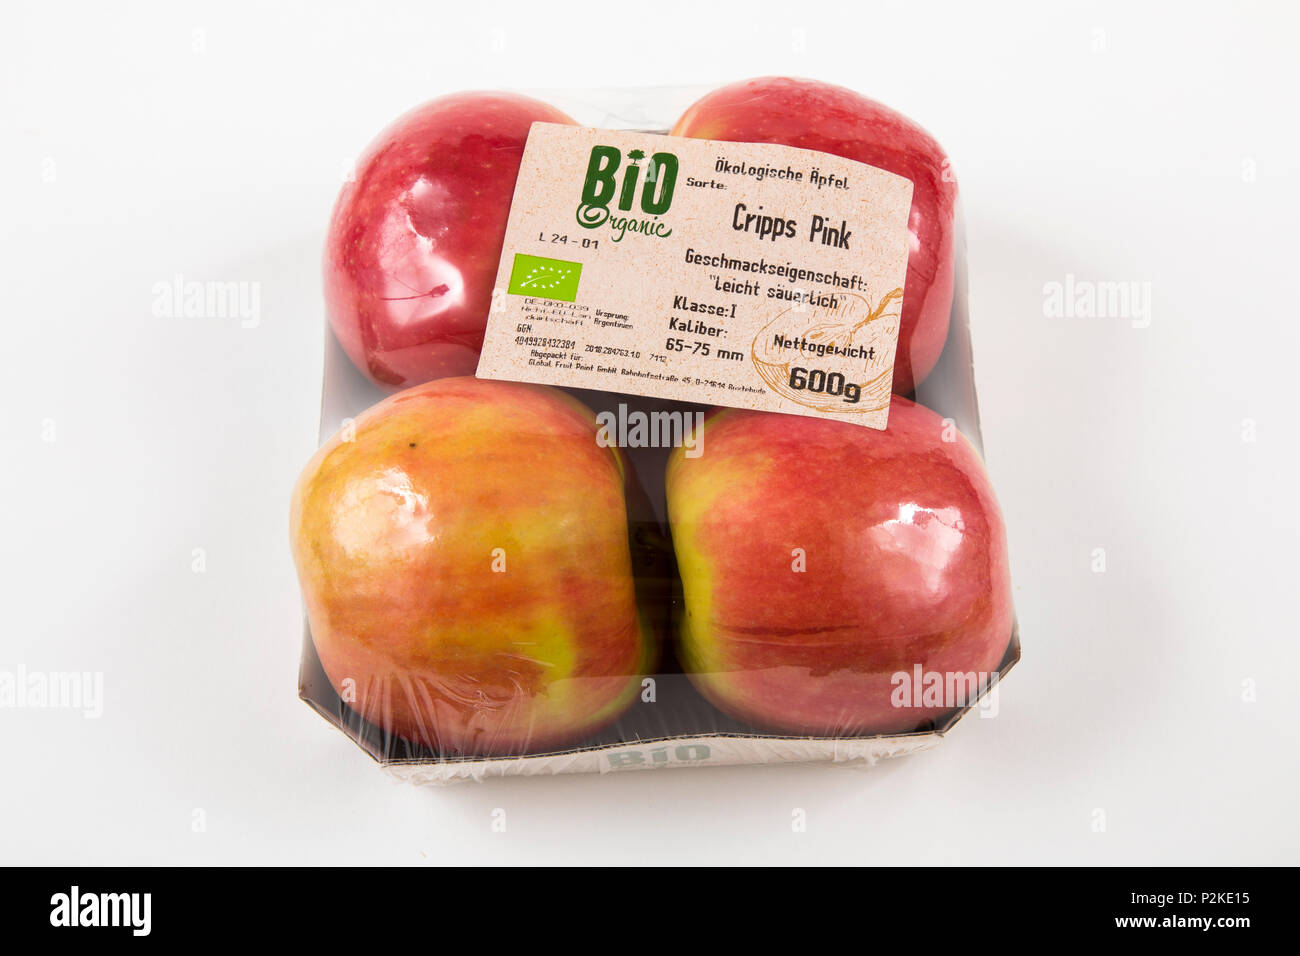 Il cibo fresco, cibo organico, frutta organica, ciascuno singolarmente confezionati in plastica tutto il cibo è disponibile nello stesso supermercato anche senza plast Foto Stock